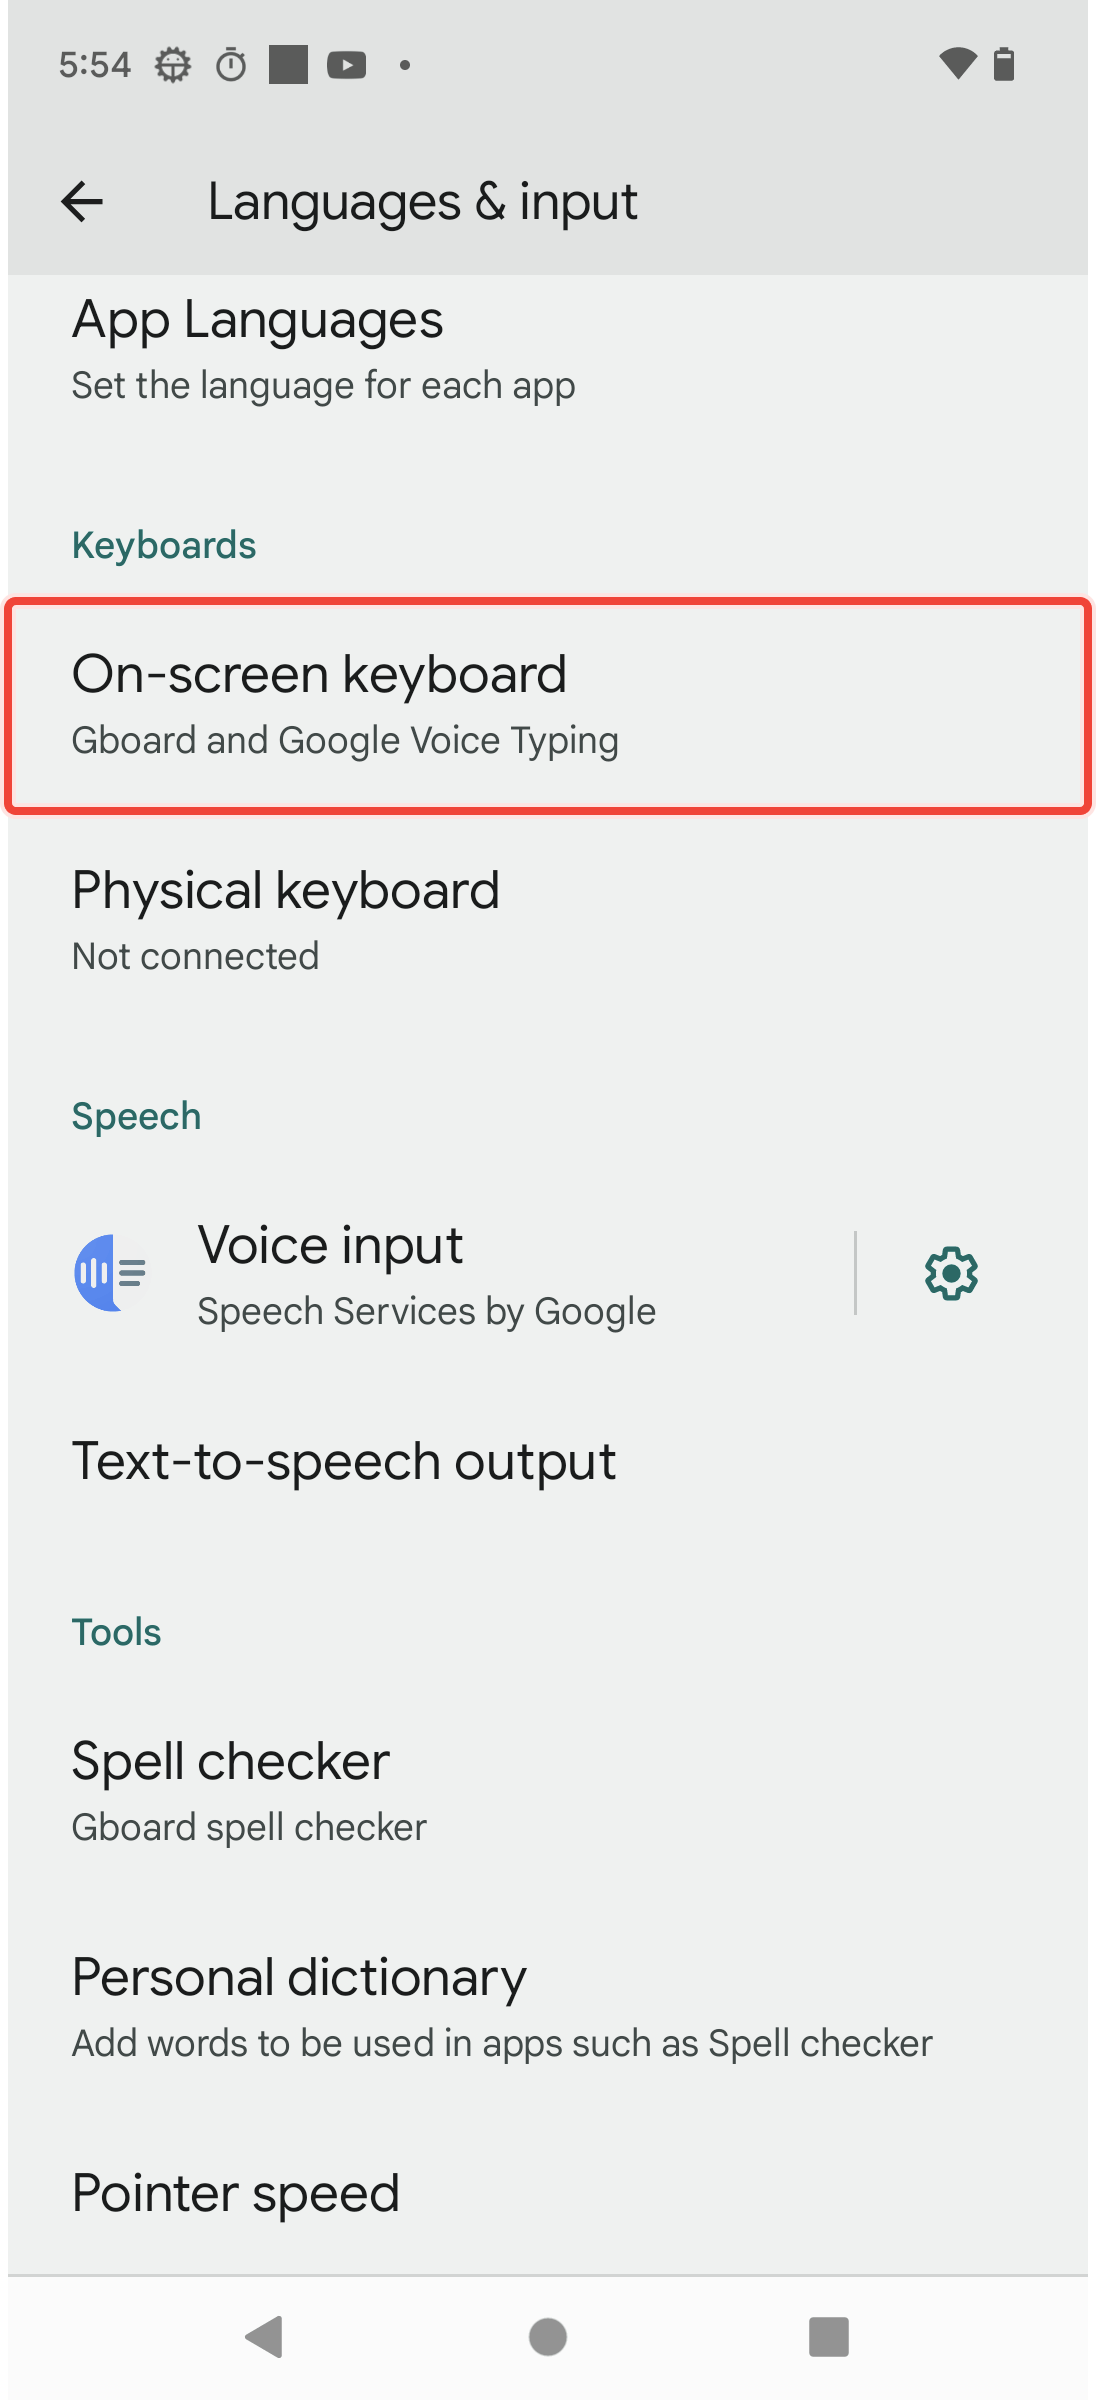 In Language & Input selecting On-screen keyboard